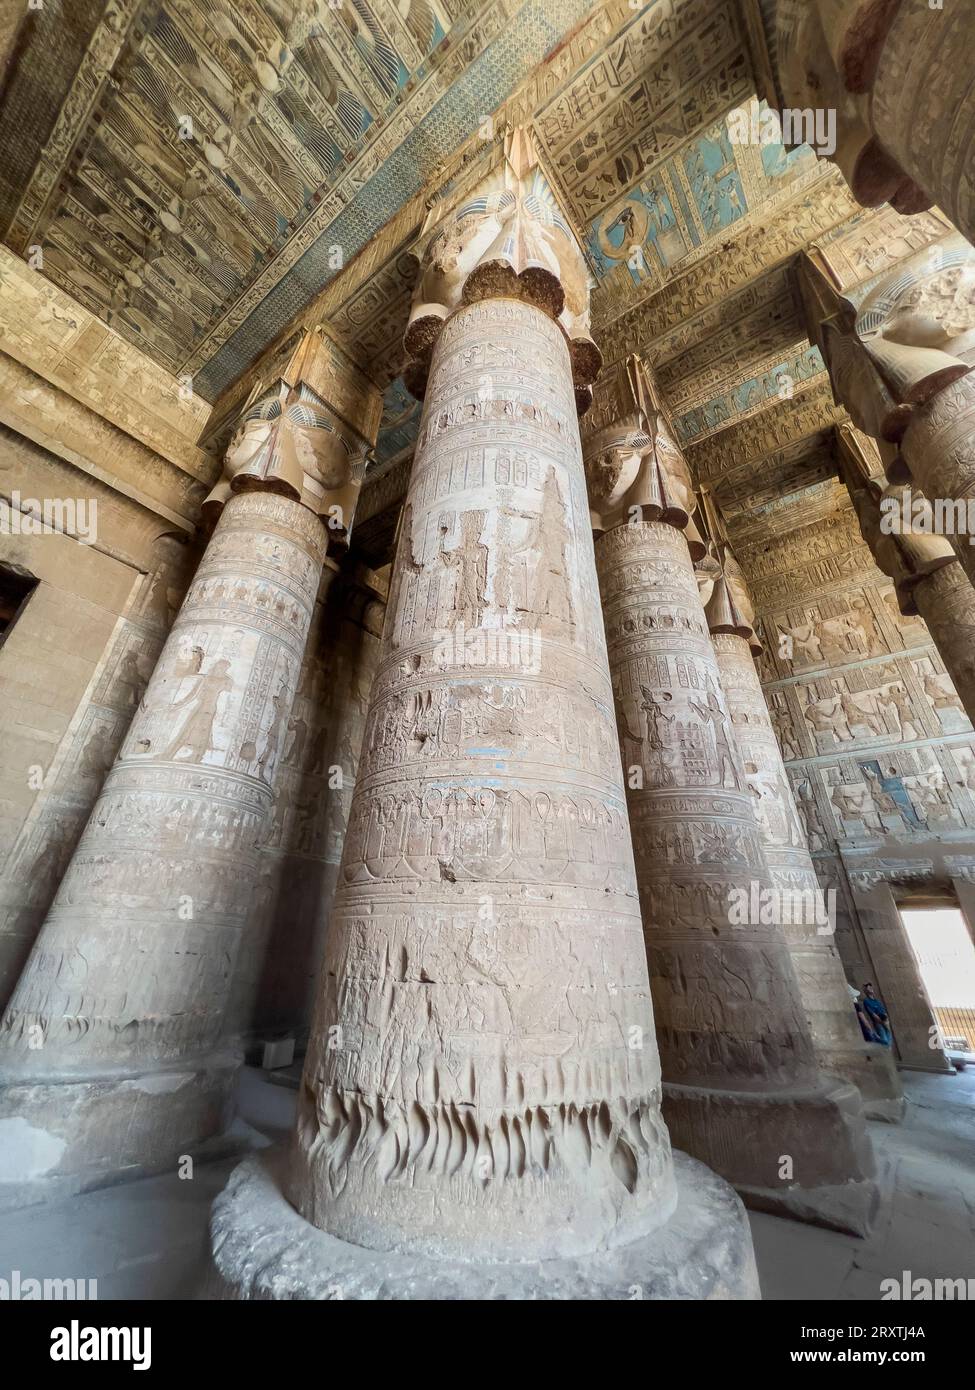 Colonnes à l'intérieur de la salle hypostyle, Temple de Hathor, complexe de Temple de Dendera, Dendera, Egypte, Afrique du Nord, Afrique Banque D'Images